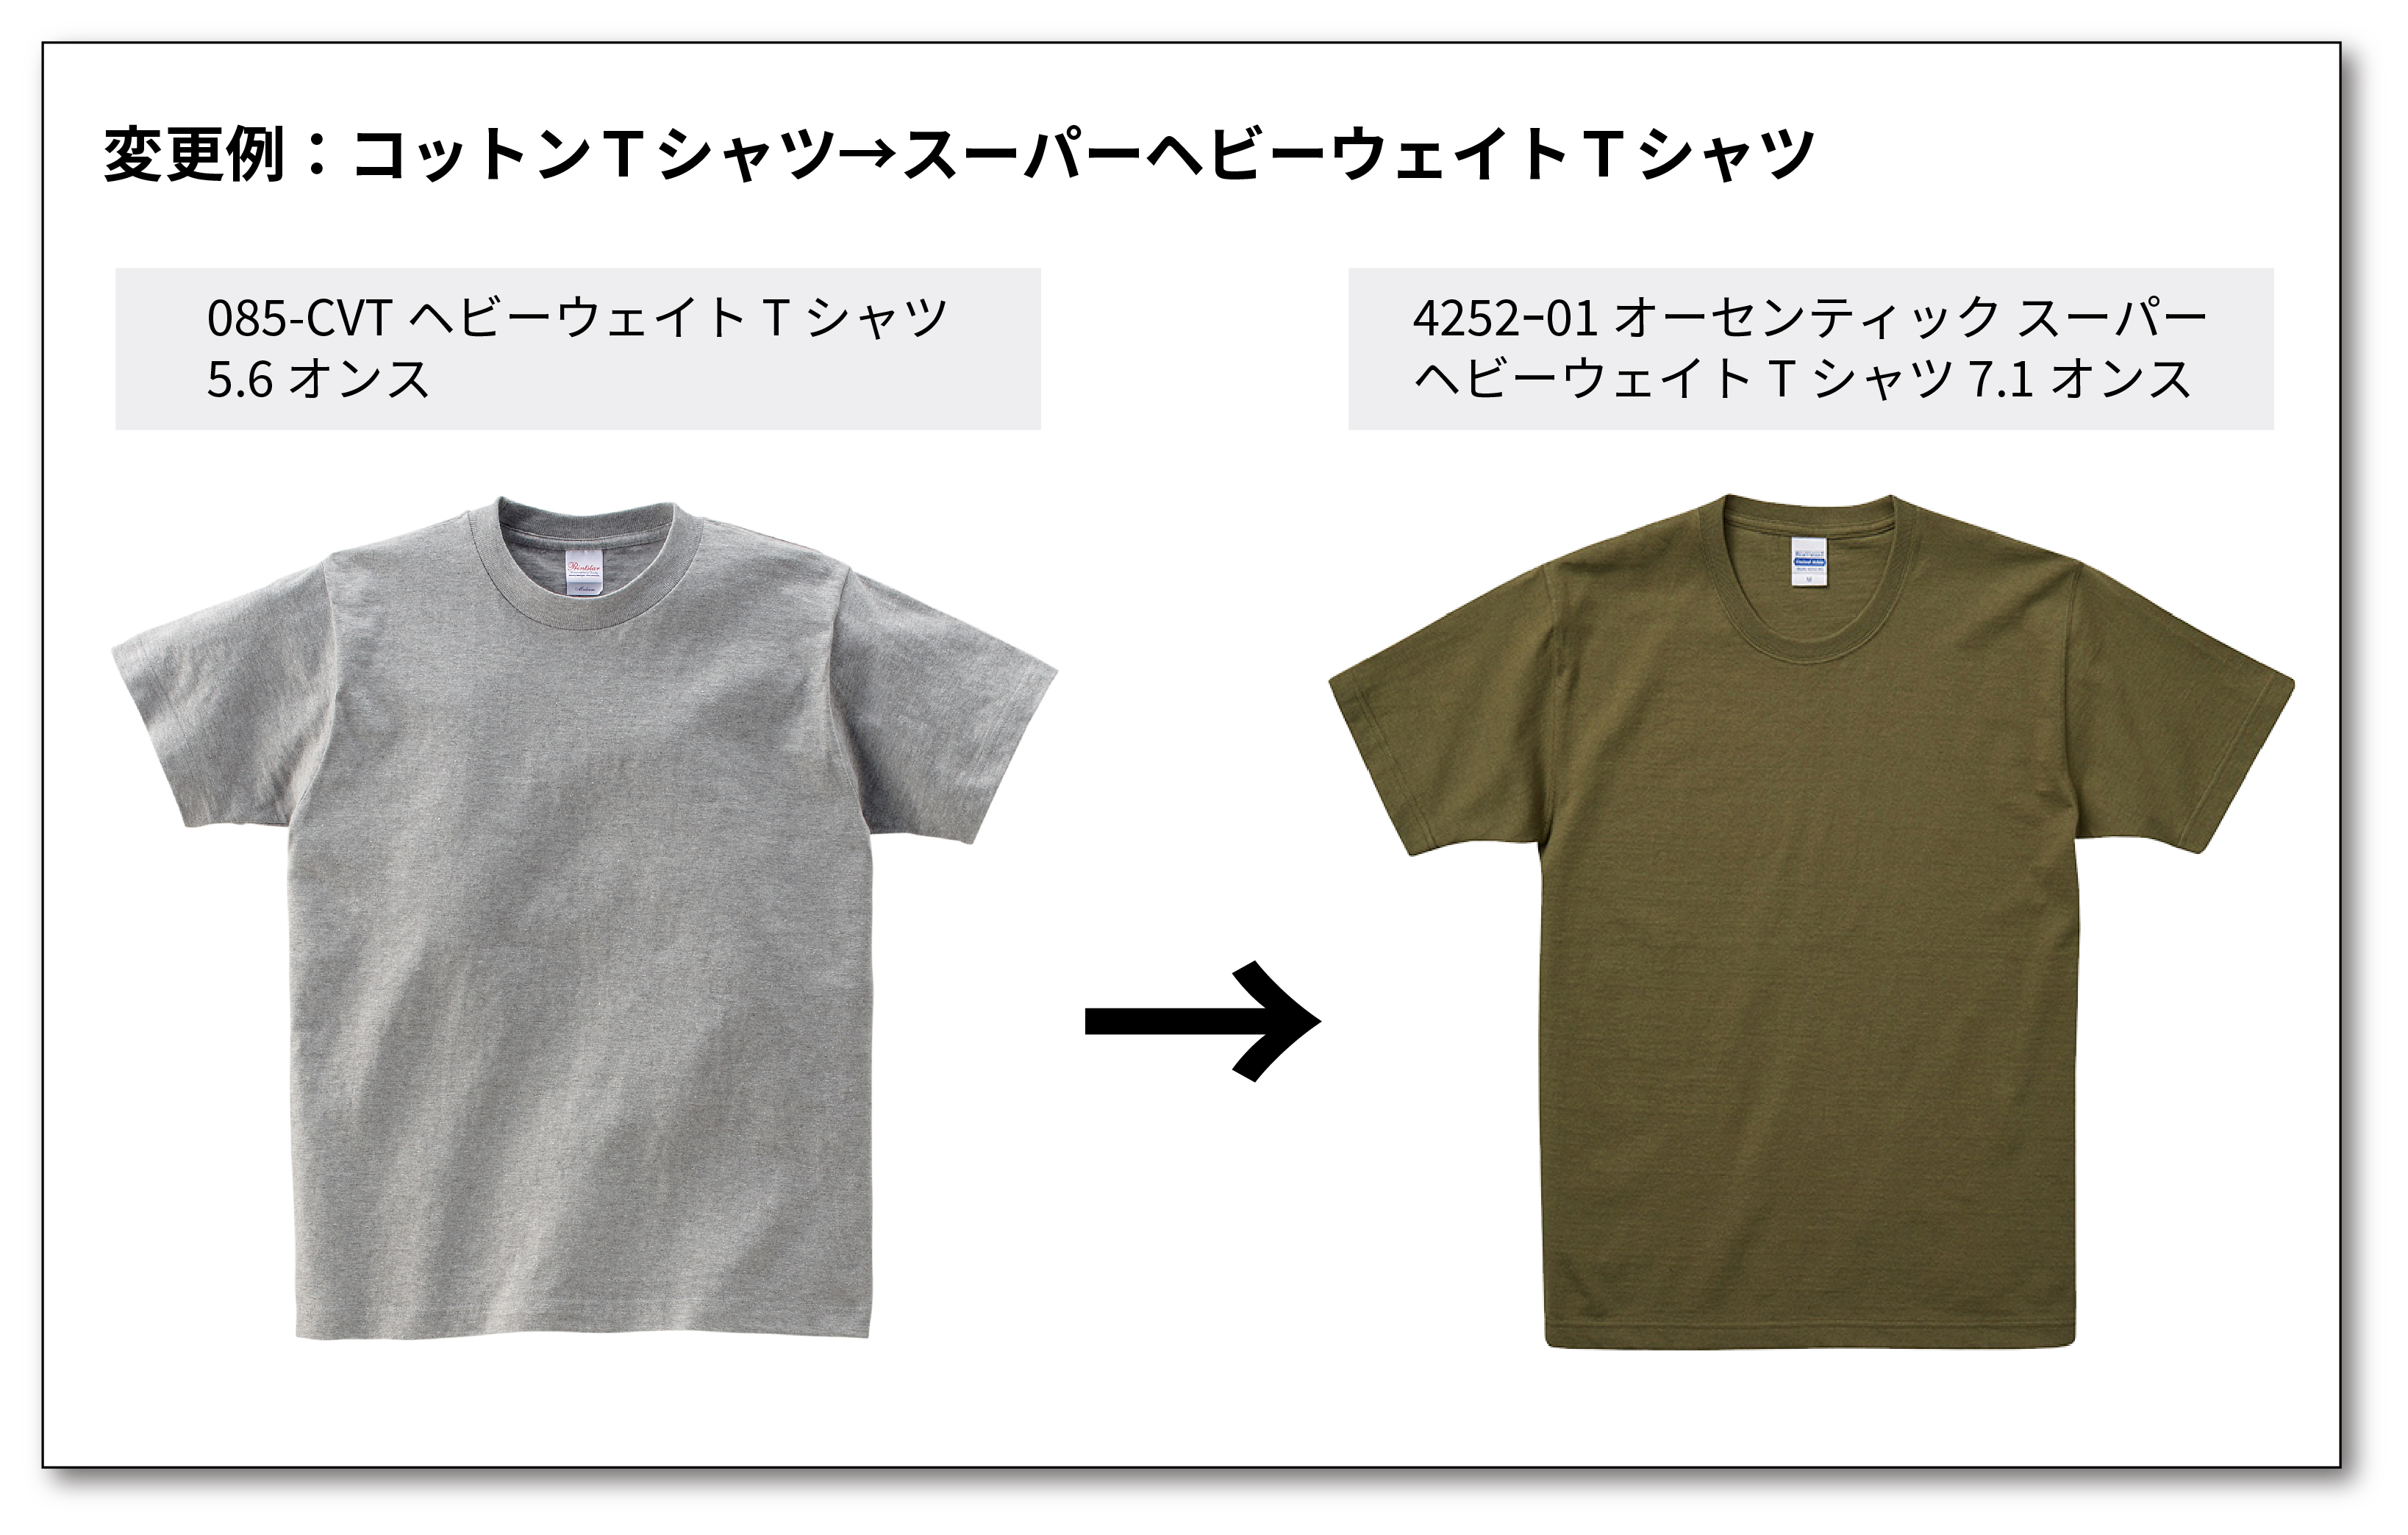 Tシャツ商品乗り換えキャンペーン参考例１